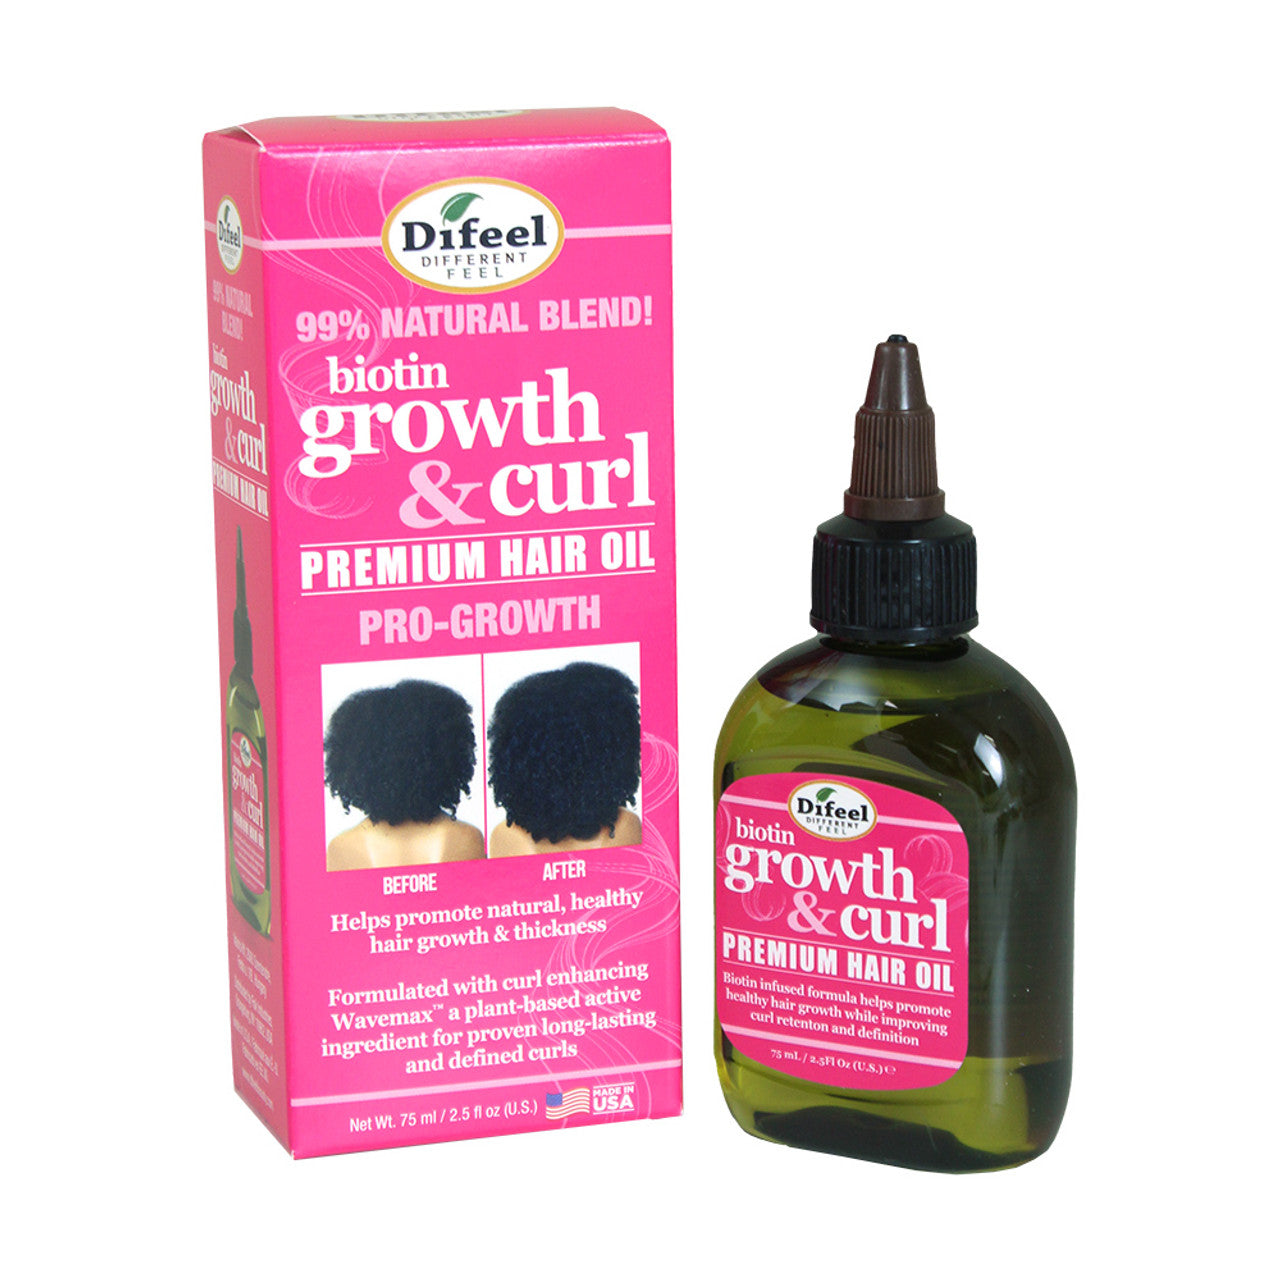 Biotin growth & hair oil